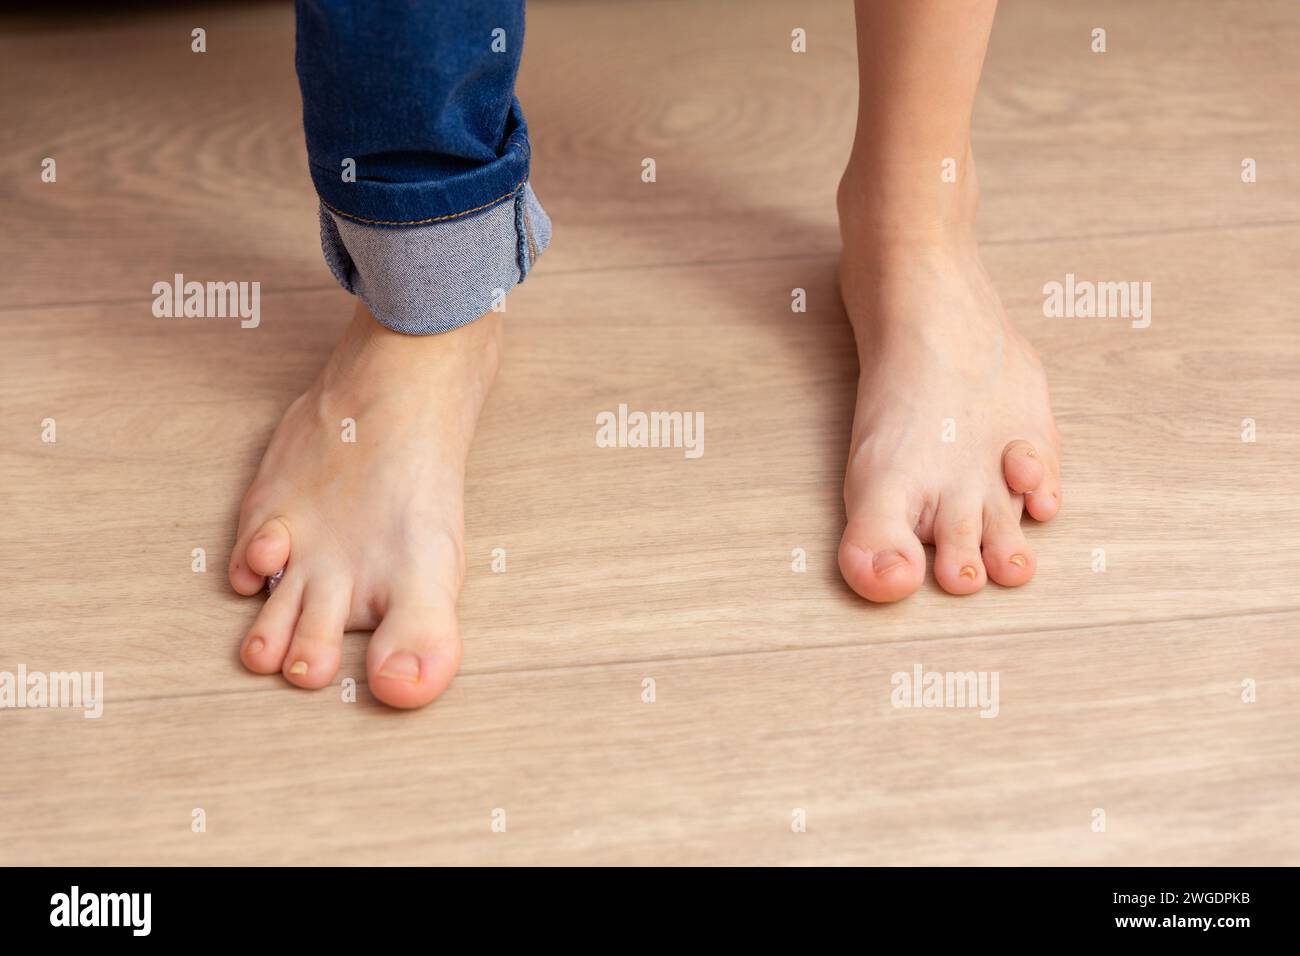 Primo piano dei piedi di una ragazzina di tredici anni con un difetto di nascita. La disabilità impedisce alla ragazza di camminare e di svilupparsi normalmente. Foto Stock